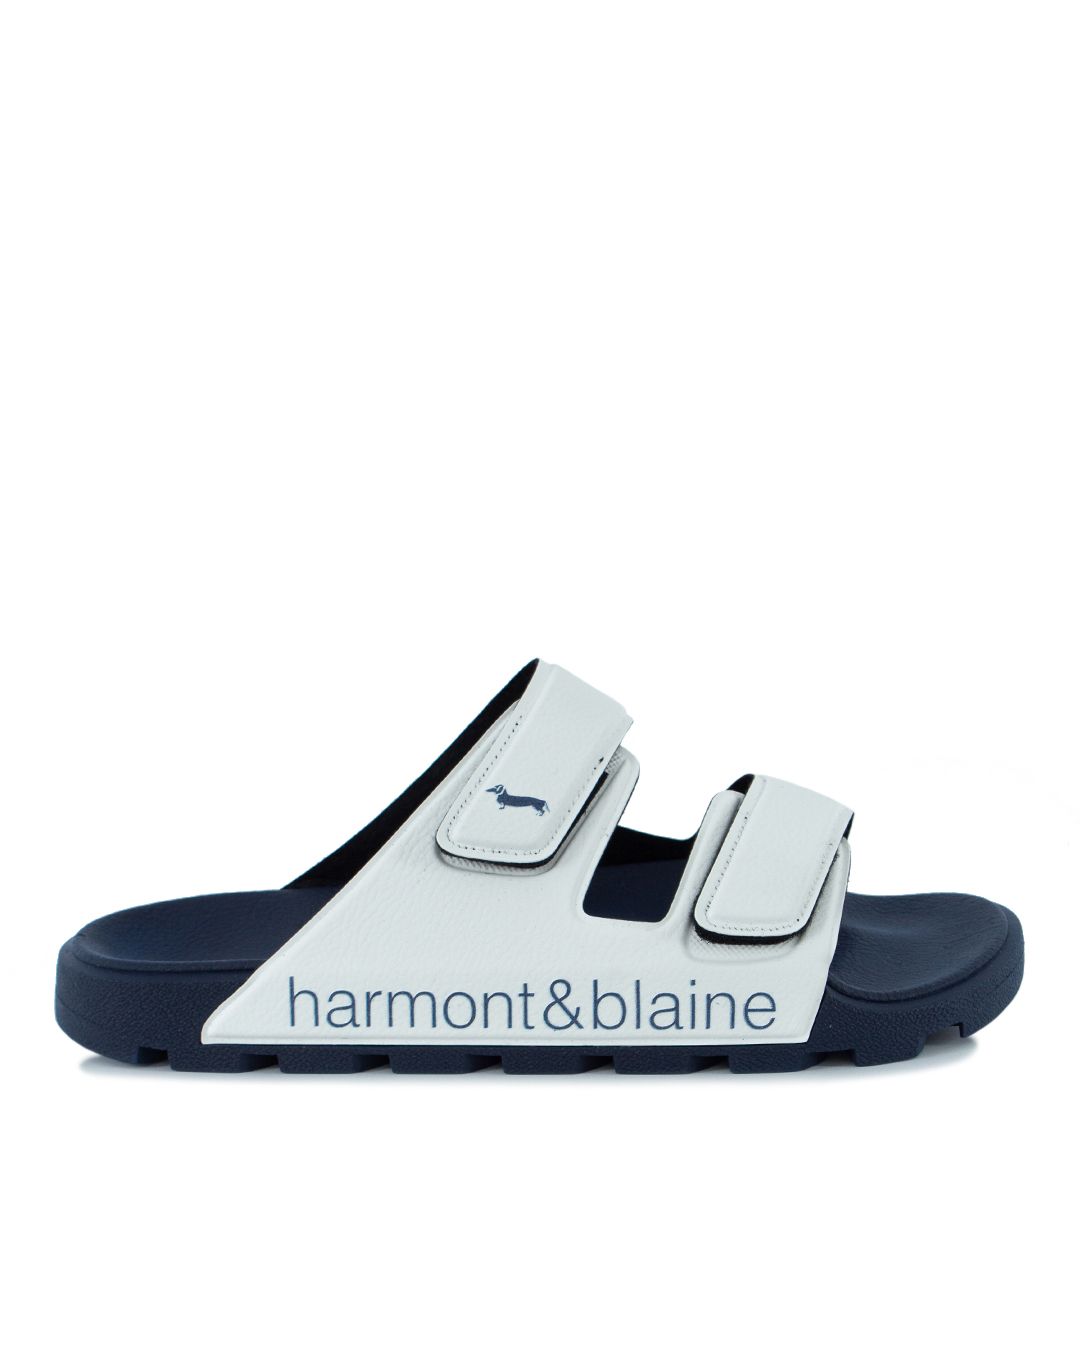 Harmont & Blaine с логотипом бренда  артикул EFM231.140.510 марки Harmont & Blaine купить за 11800 руб.